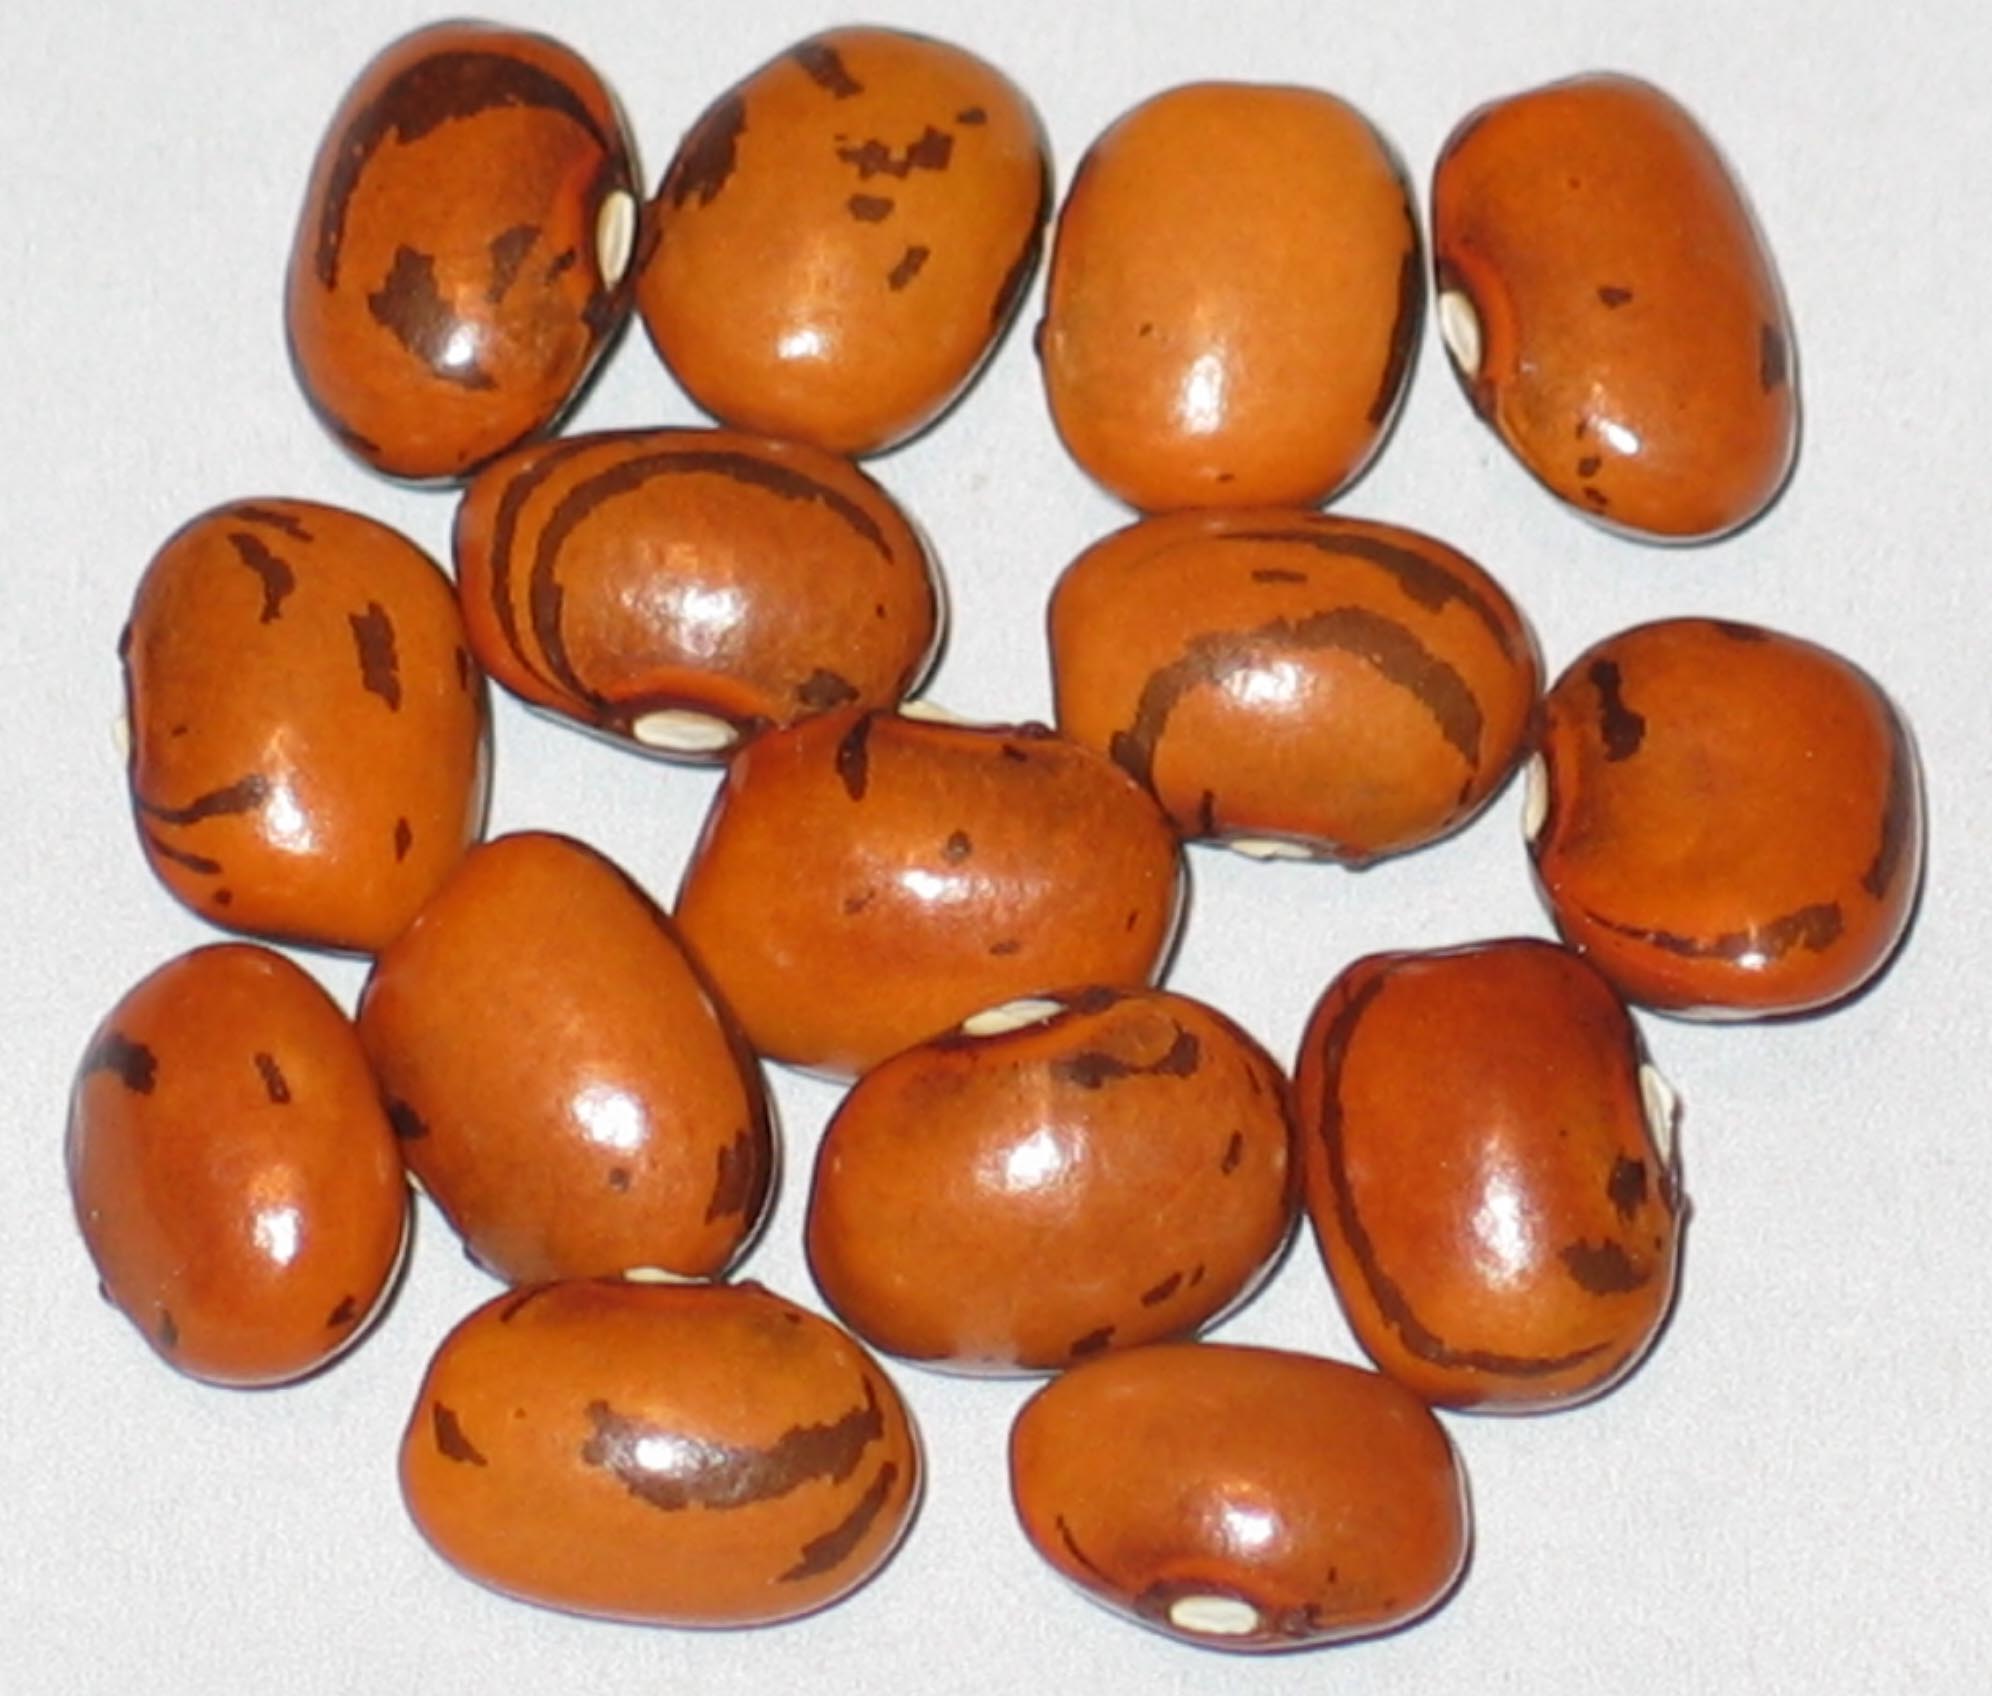 image of Geradi beans